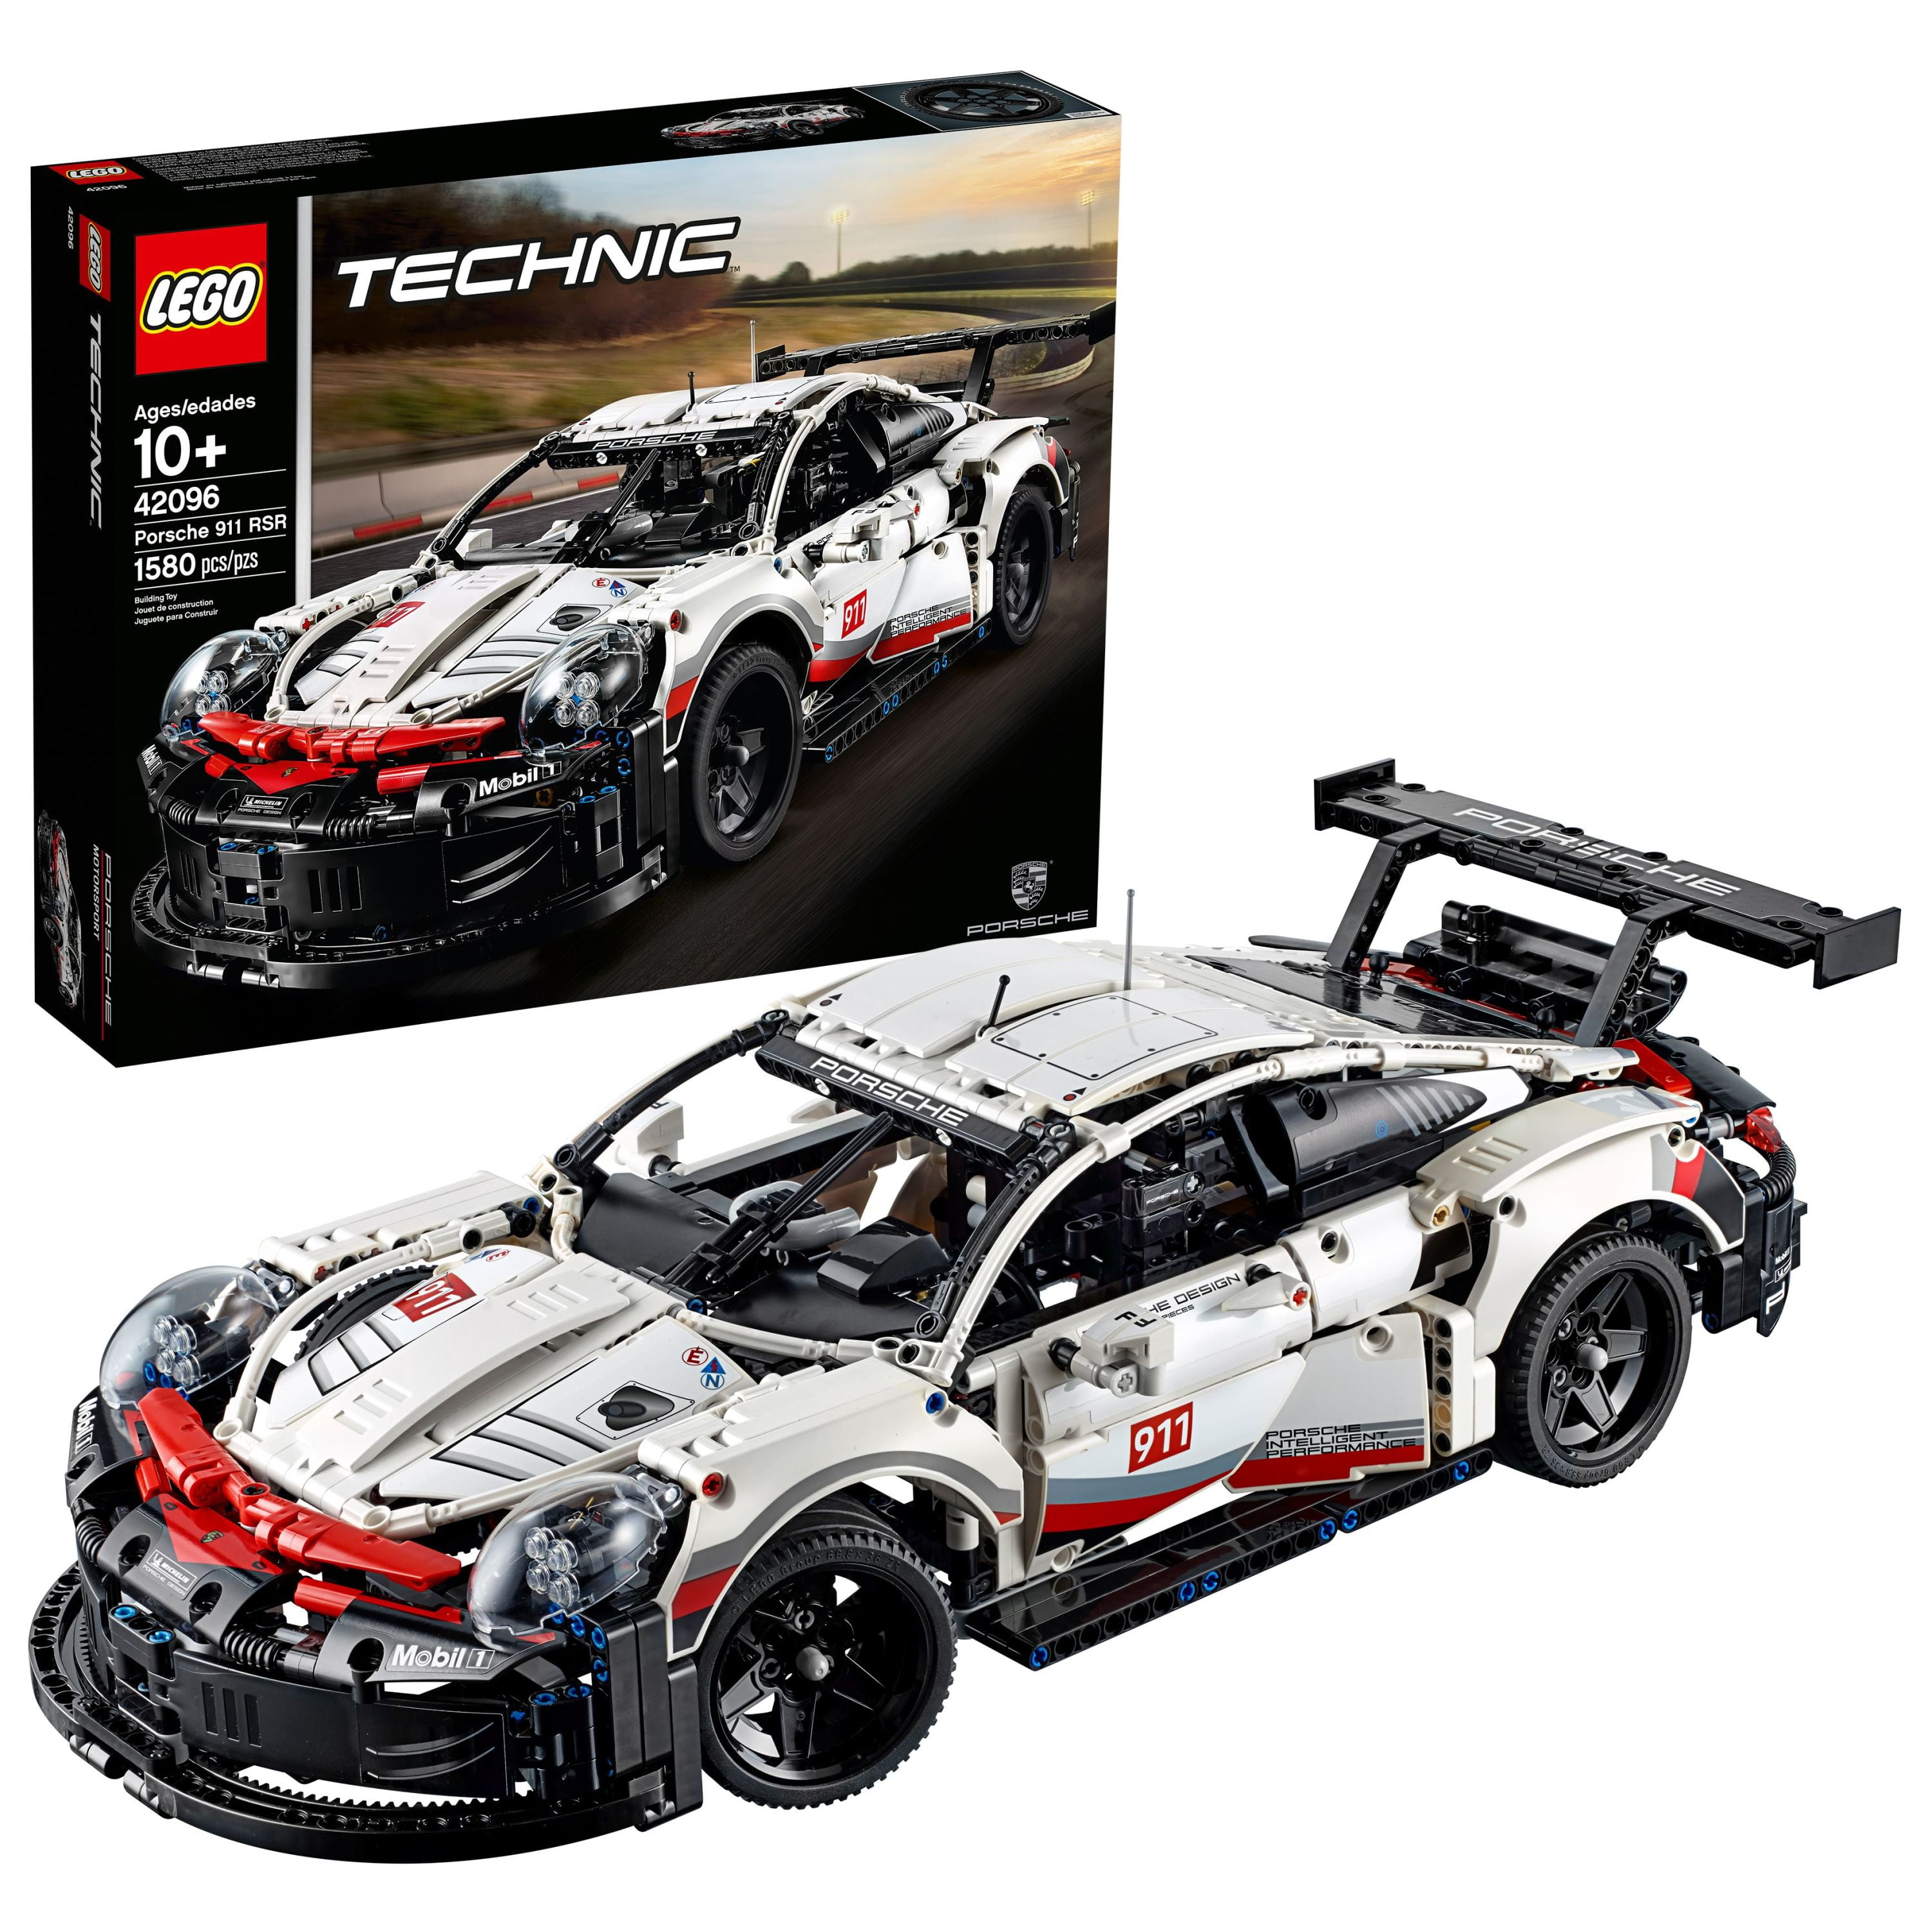 miembro Comorama embudo LEGO Technic Porsche 911 RSR Race Car Model Building Kit 42096, Advanced  Replica, Exclusive Collectible Set, Gift for Kids, Boys & Girls -  Walmart.com